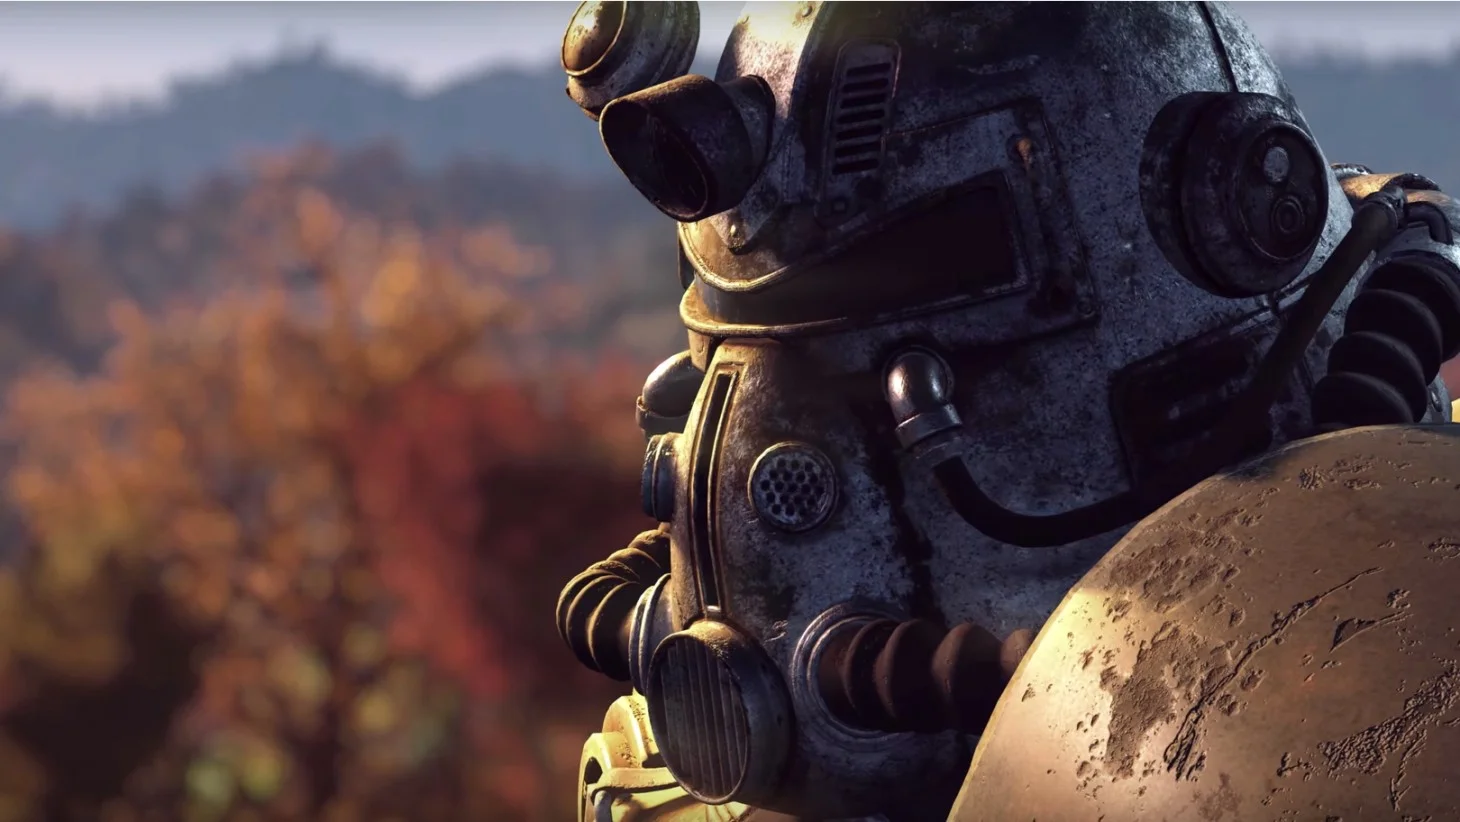 События Fallout 76 происходят в штате Западная Вирджиния. Это значит, что нас жду воплощенные в виртуальном мире реальные достопримечательности, а также страшные легенды и мифы. О них-то мы и поговорим в этом материале.